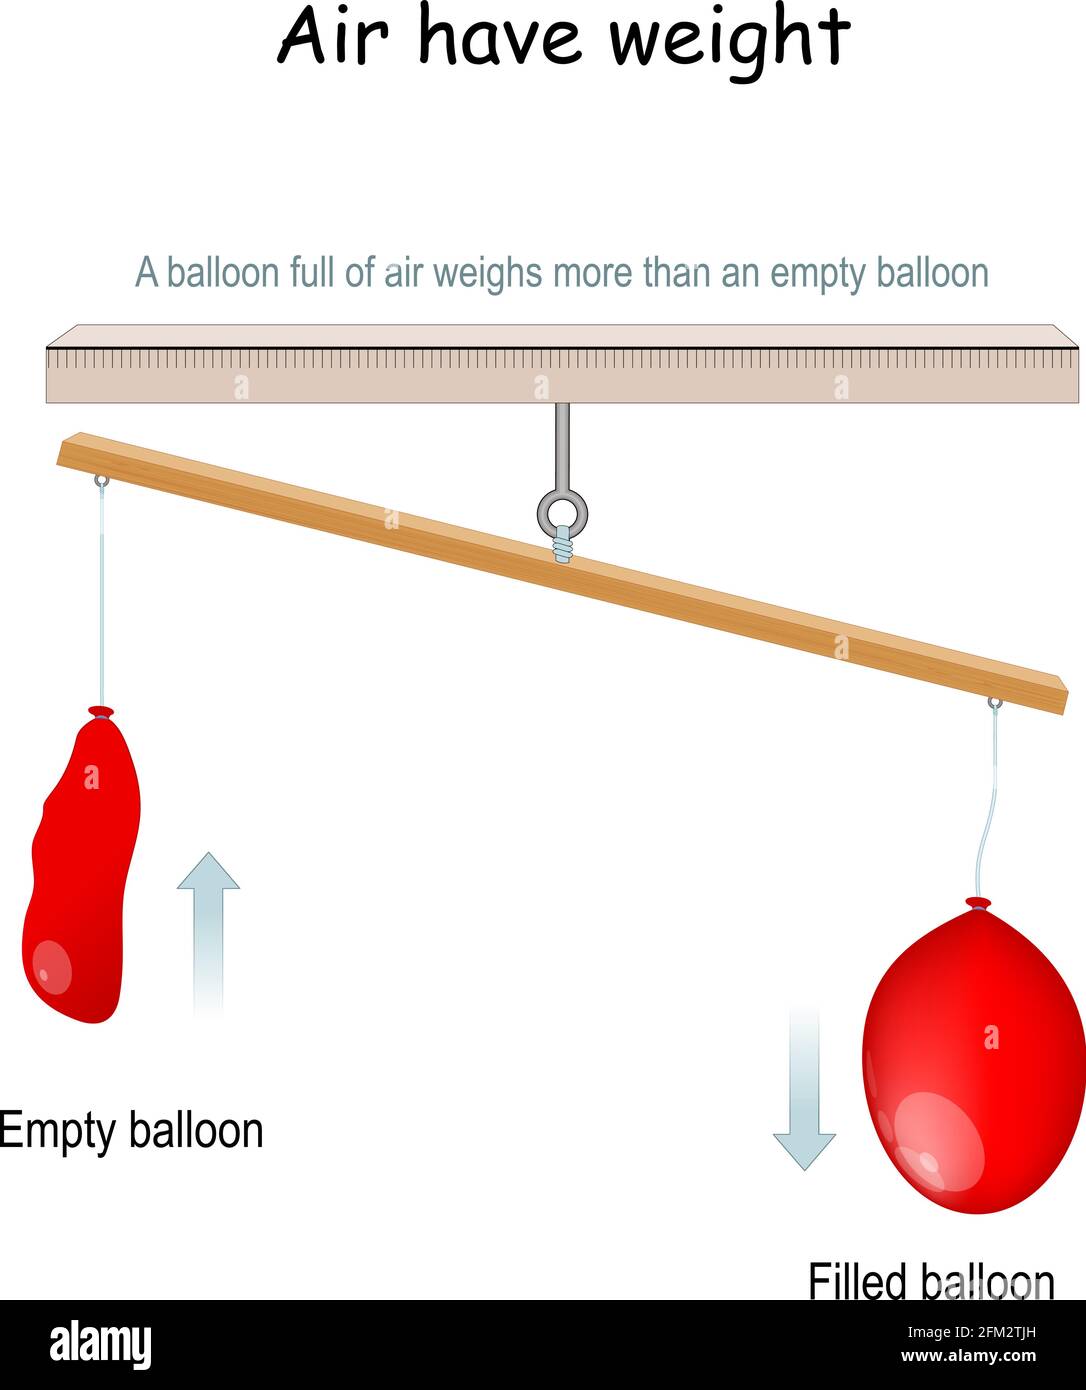 Luft hat Gewicht. Bildungsexperiment. Ein Luftballon wiegt mehr als ein  leerer Ballon. Vektorgrafik Stock-Vektorgrafik - Alamy